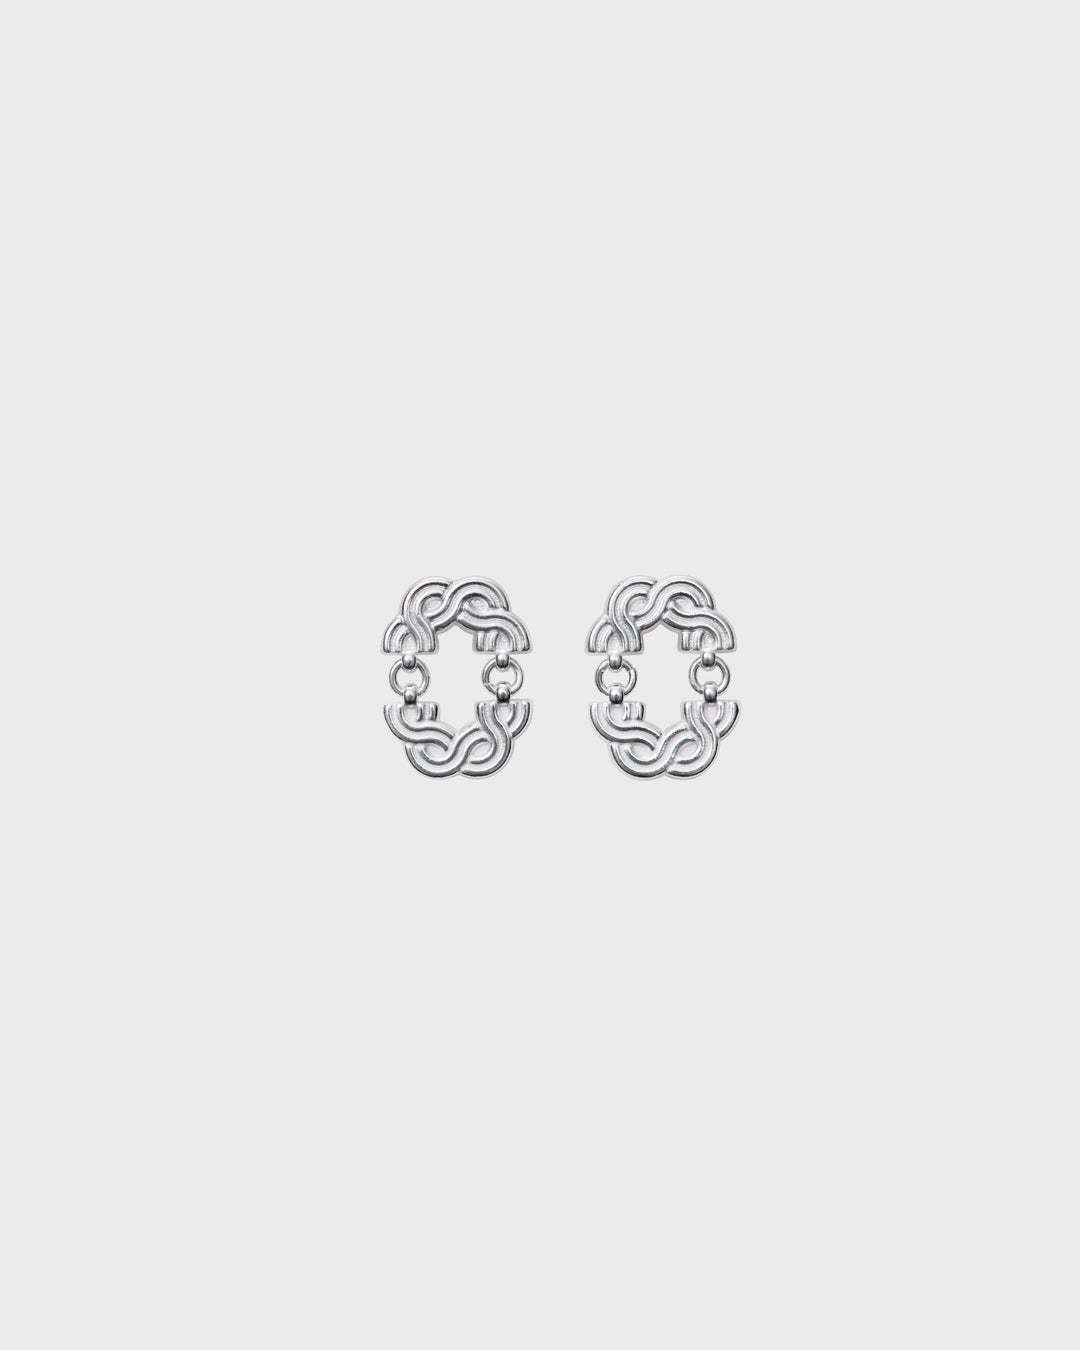 Louhetar earrings small silver half pair left